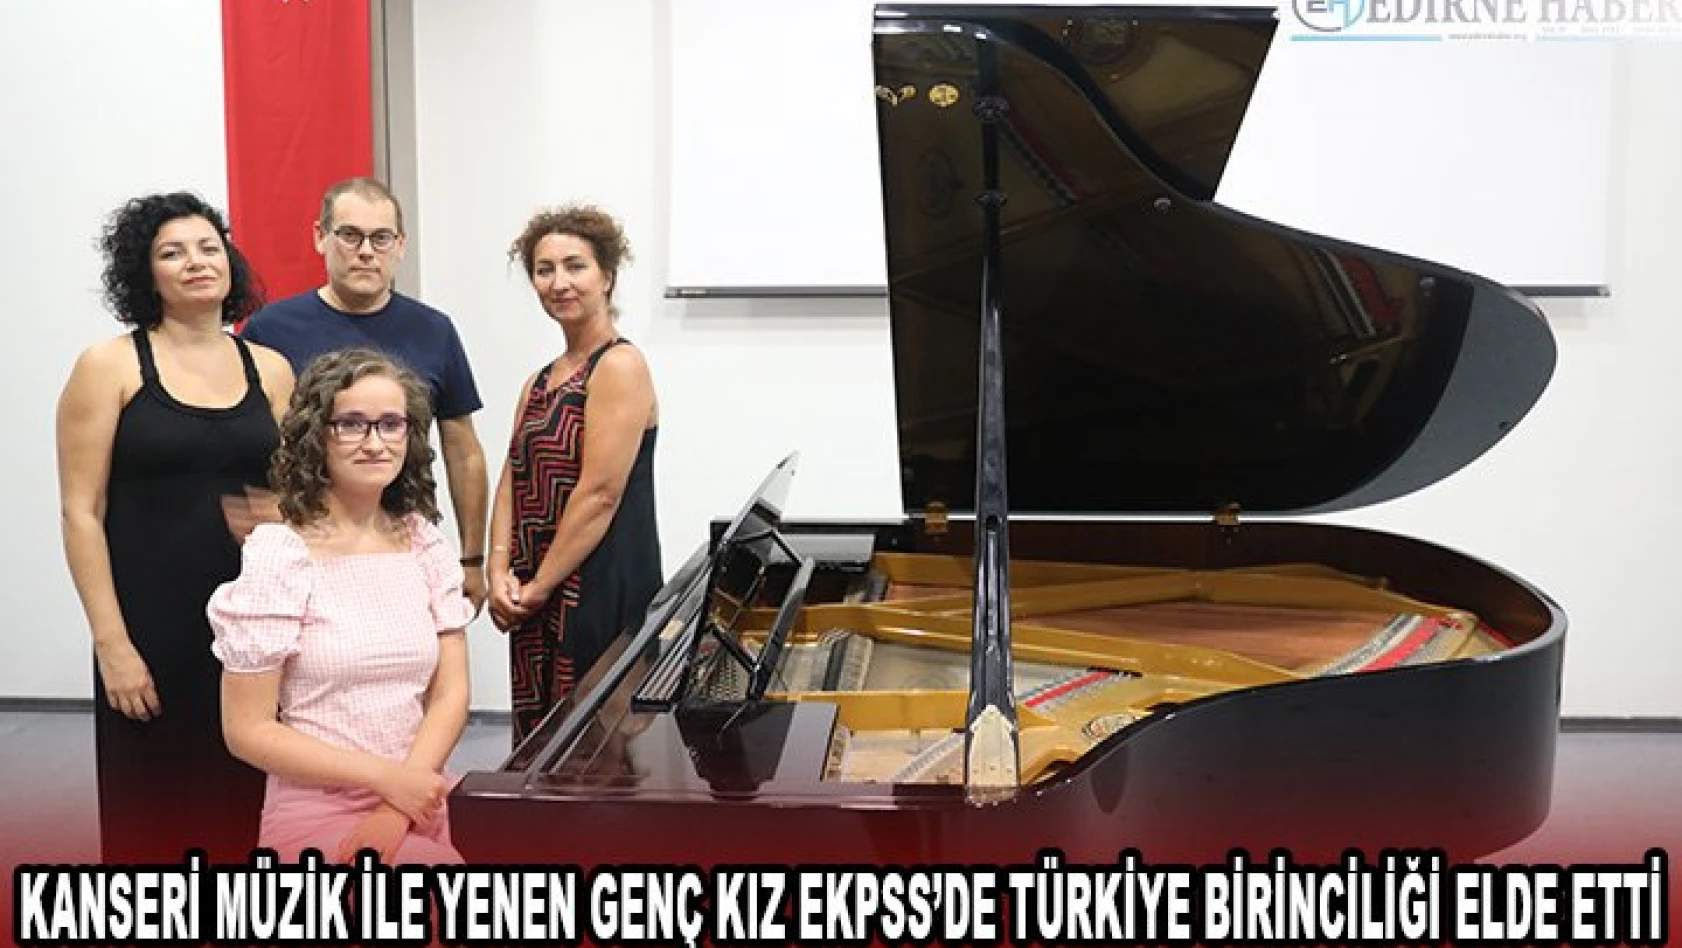 Kanseri müzik ile yenen genç kız EKPSS'de Türkiye birinciliği elde etti